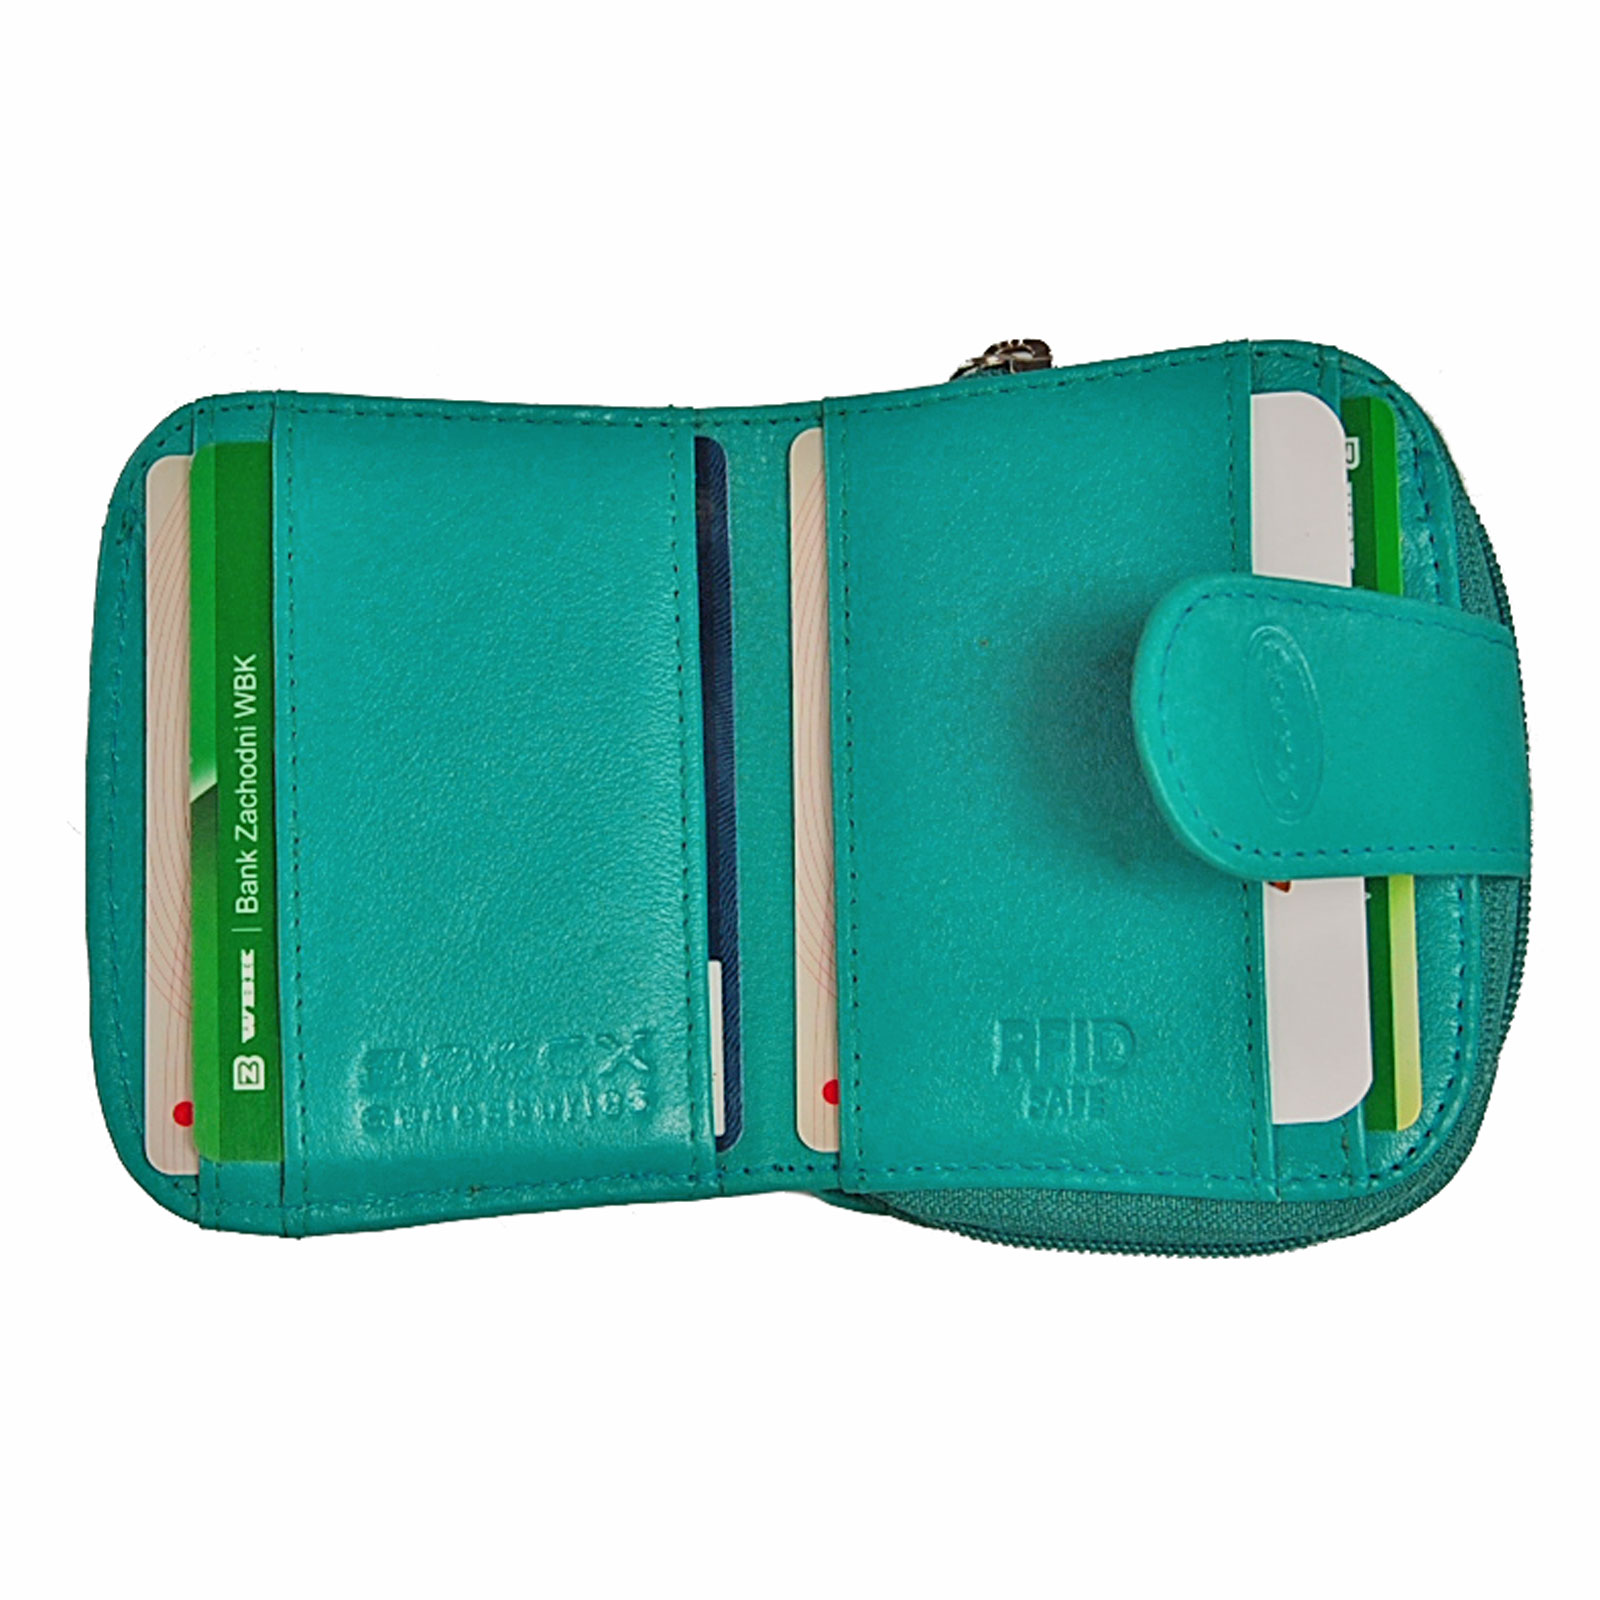 Boccx Markenshop - Brustbeutel Leder RFID Schutz Brusttasche Klarsichtfach  Security Wallet 10018